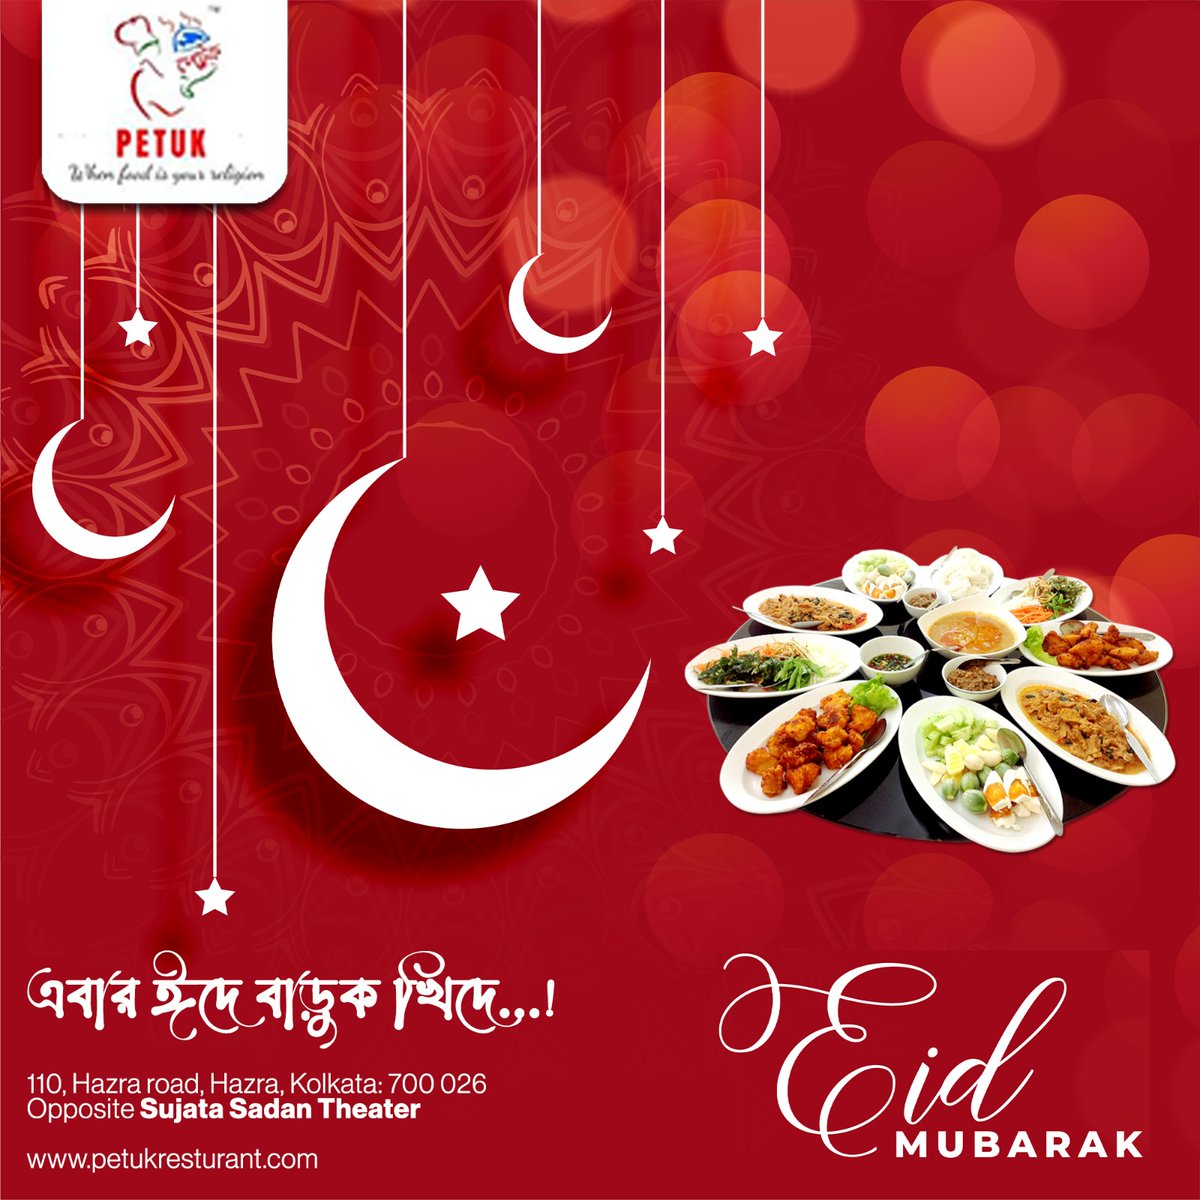 Eid Mubarak 💯
.
. 
#Eid #kolkkatalife #calcutta_igers #kolkatabuzz #kolkatagram #calcutta #Petuk #calcuttadairies #petukebardoshe